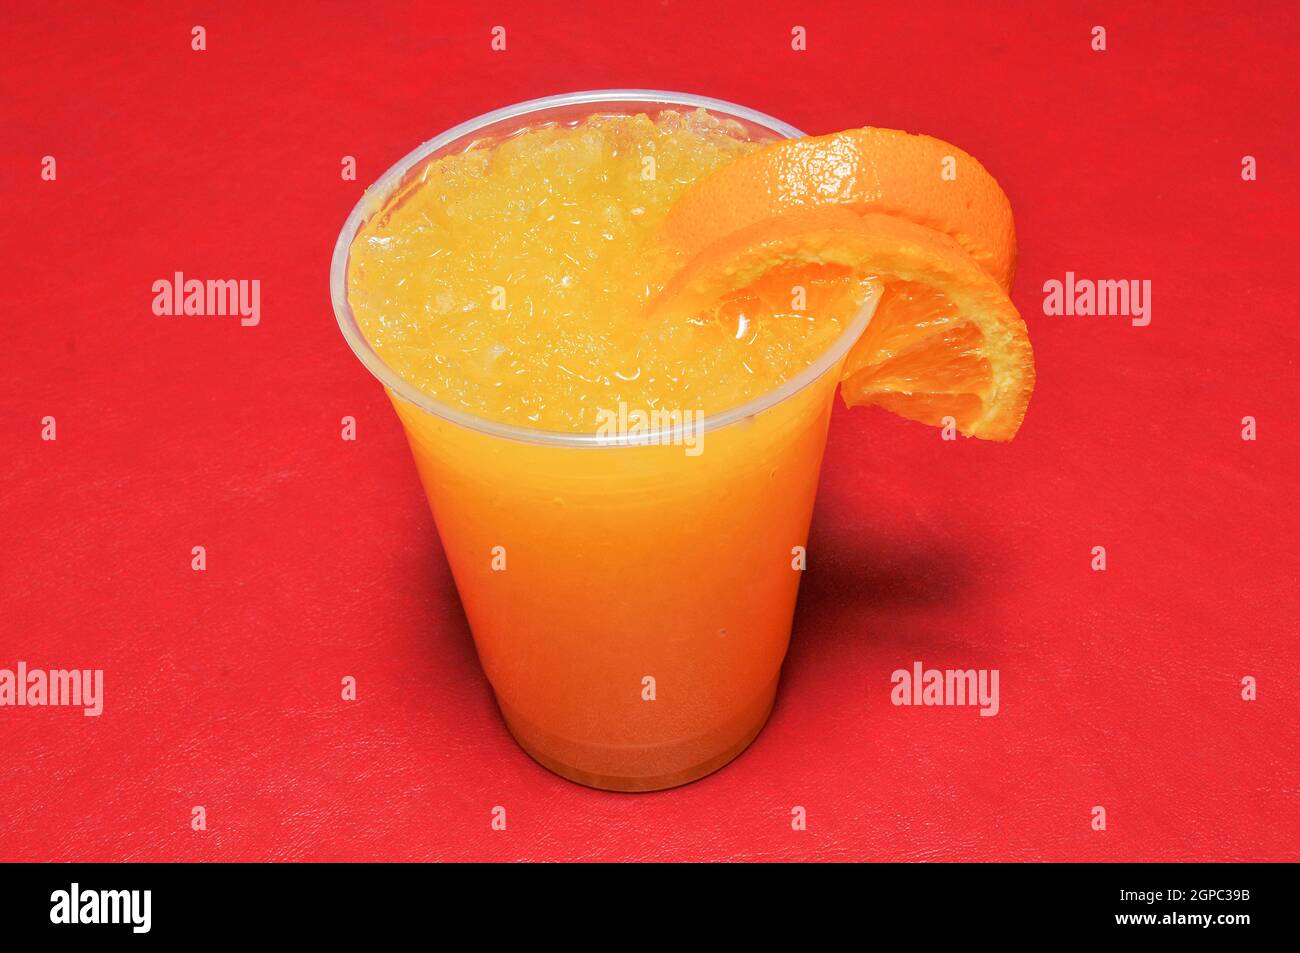 Deliziosa bevanda a base di frutta fredda conosciuta come aranciata Foto Stock